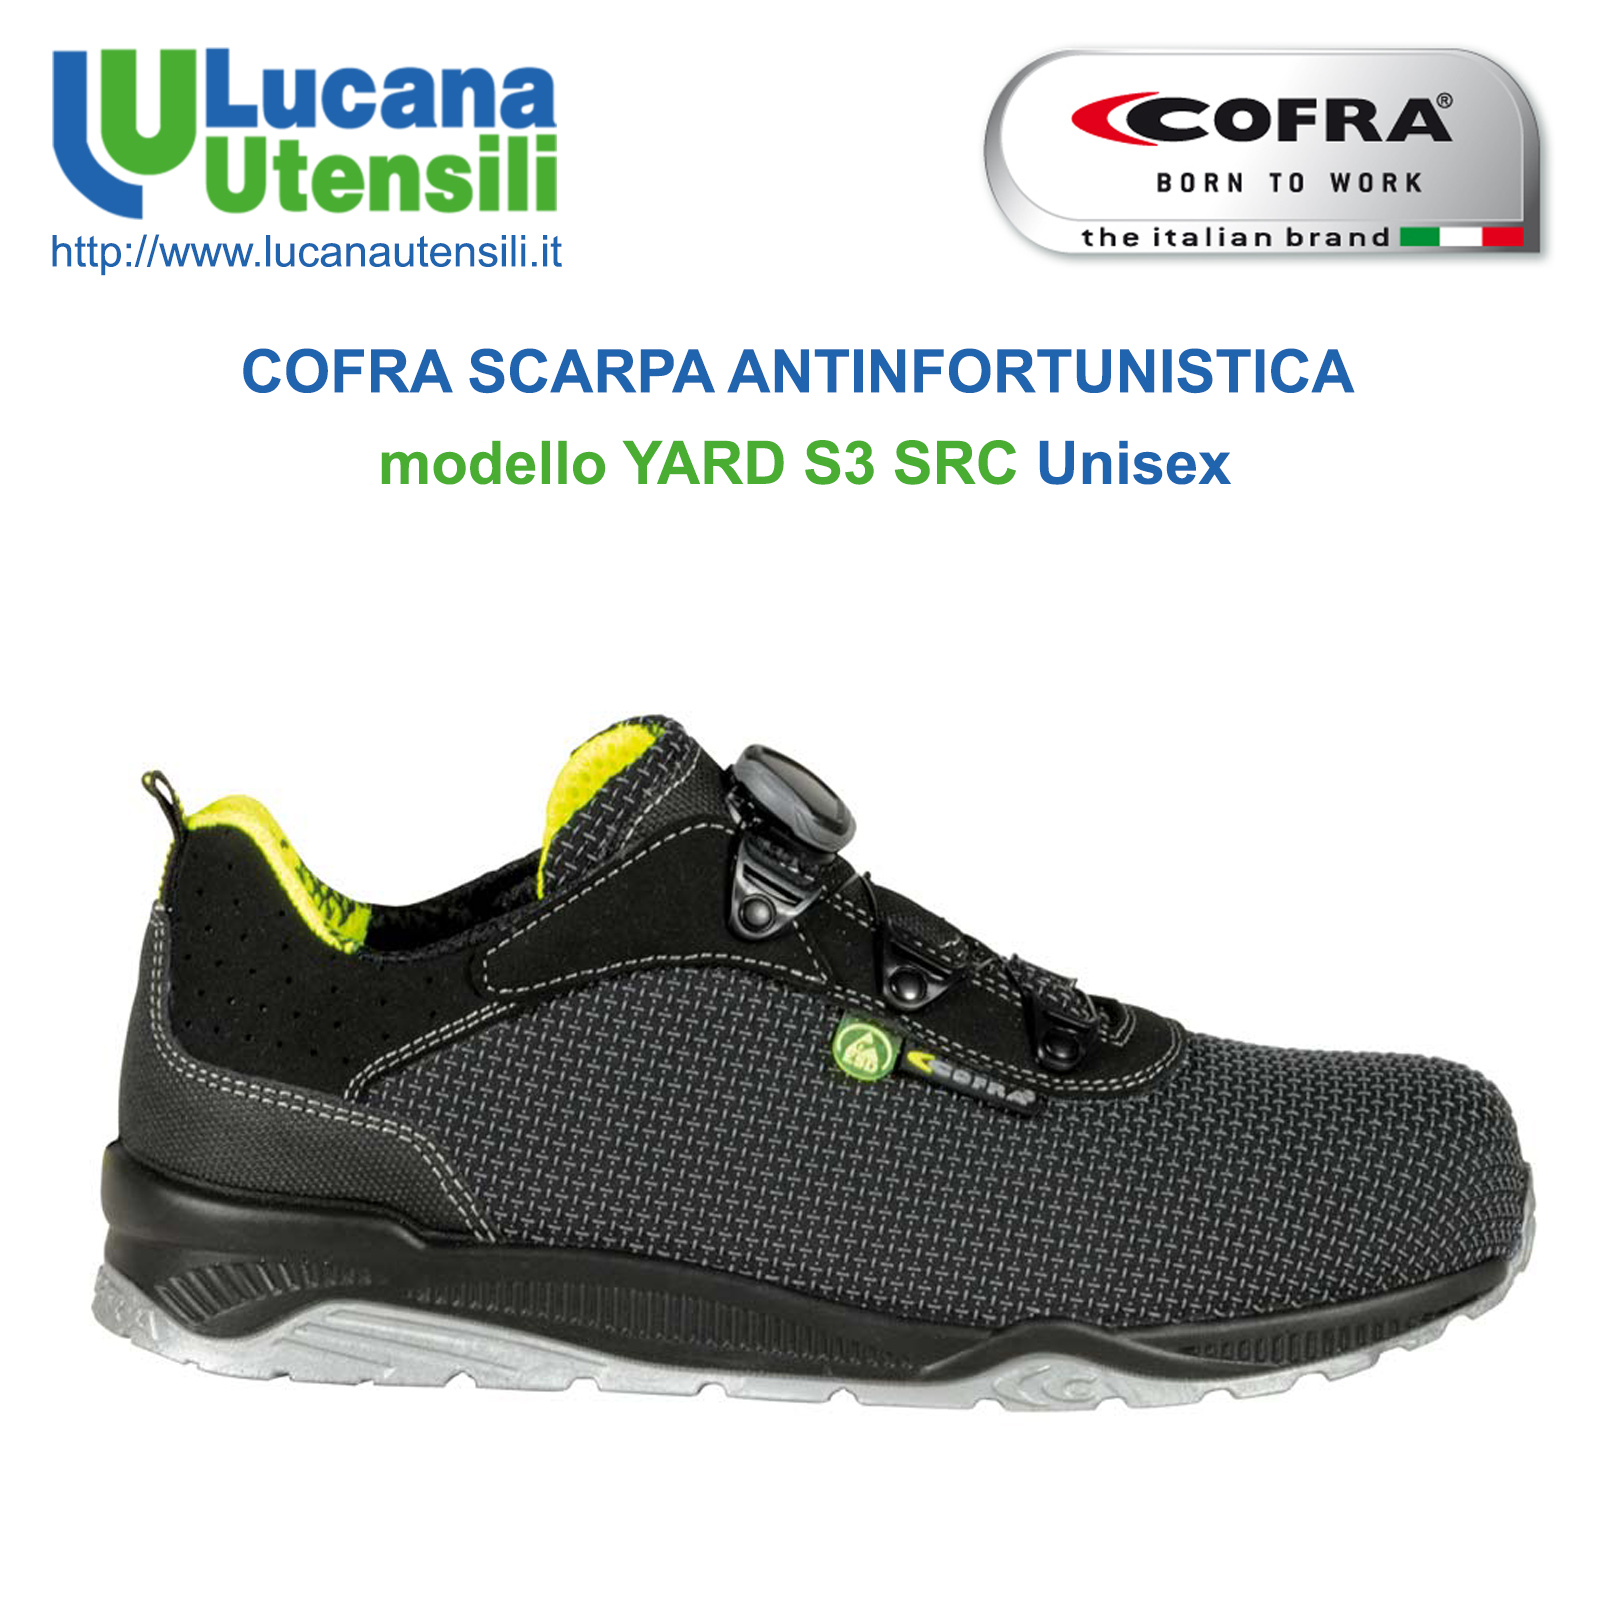 COFRA SCARPA ANTINFORTUNISTICA modello YARD S3 ESD SRC Estiva NEW Unisex  Lavoro – Lucana Utensili s.r.l. – Noleggio e Vendita